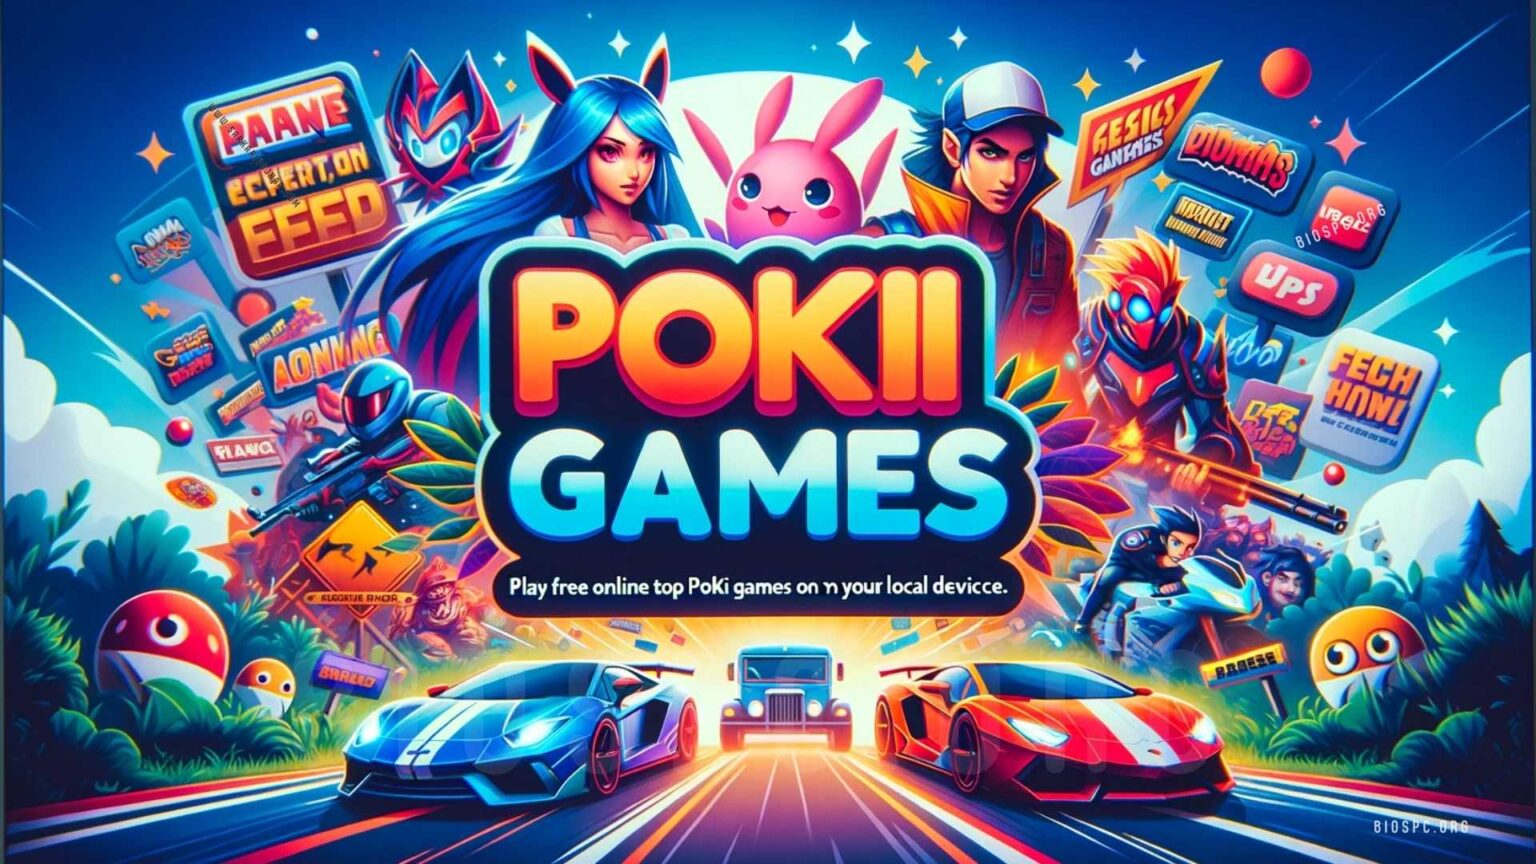 Poki Games Free Fire Min 1536x864 